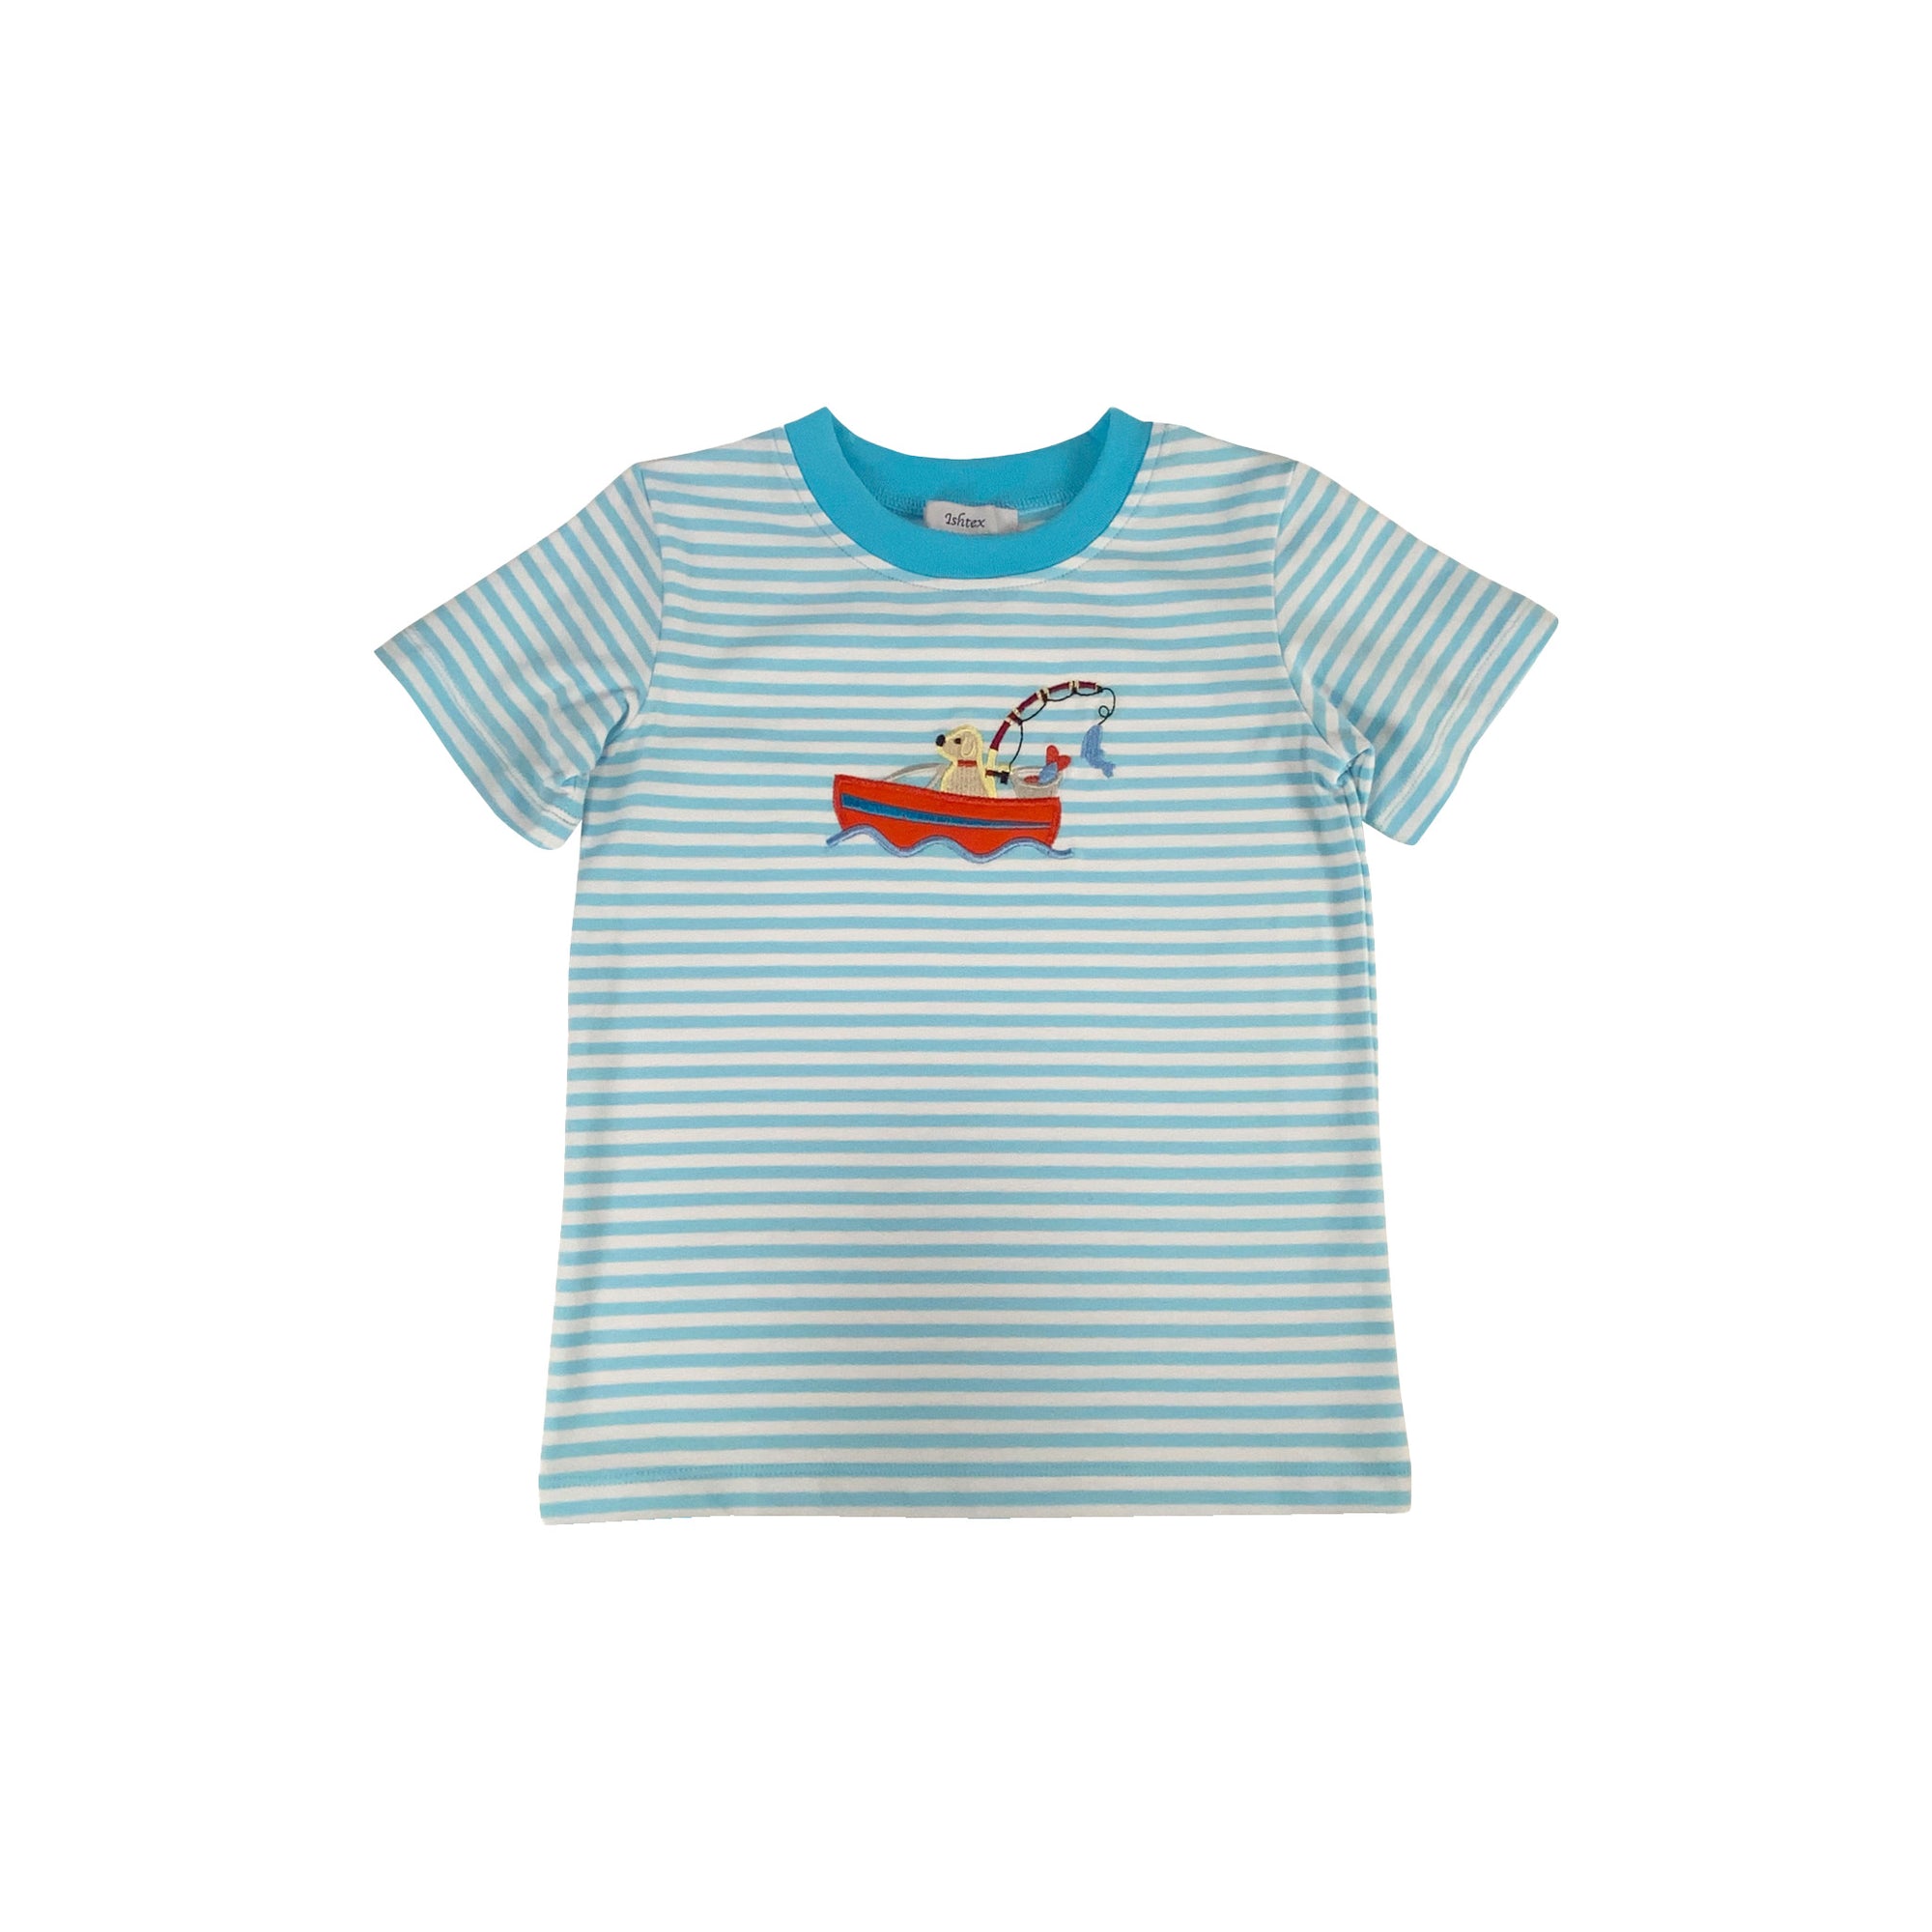 Gone Fishing Boy's T-Shirt